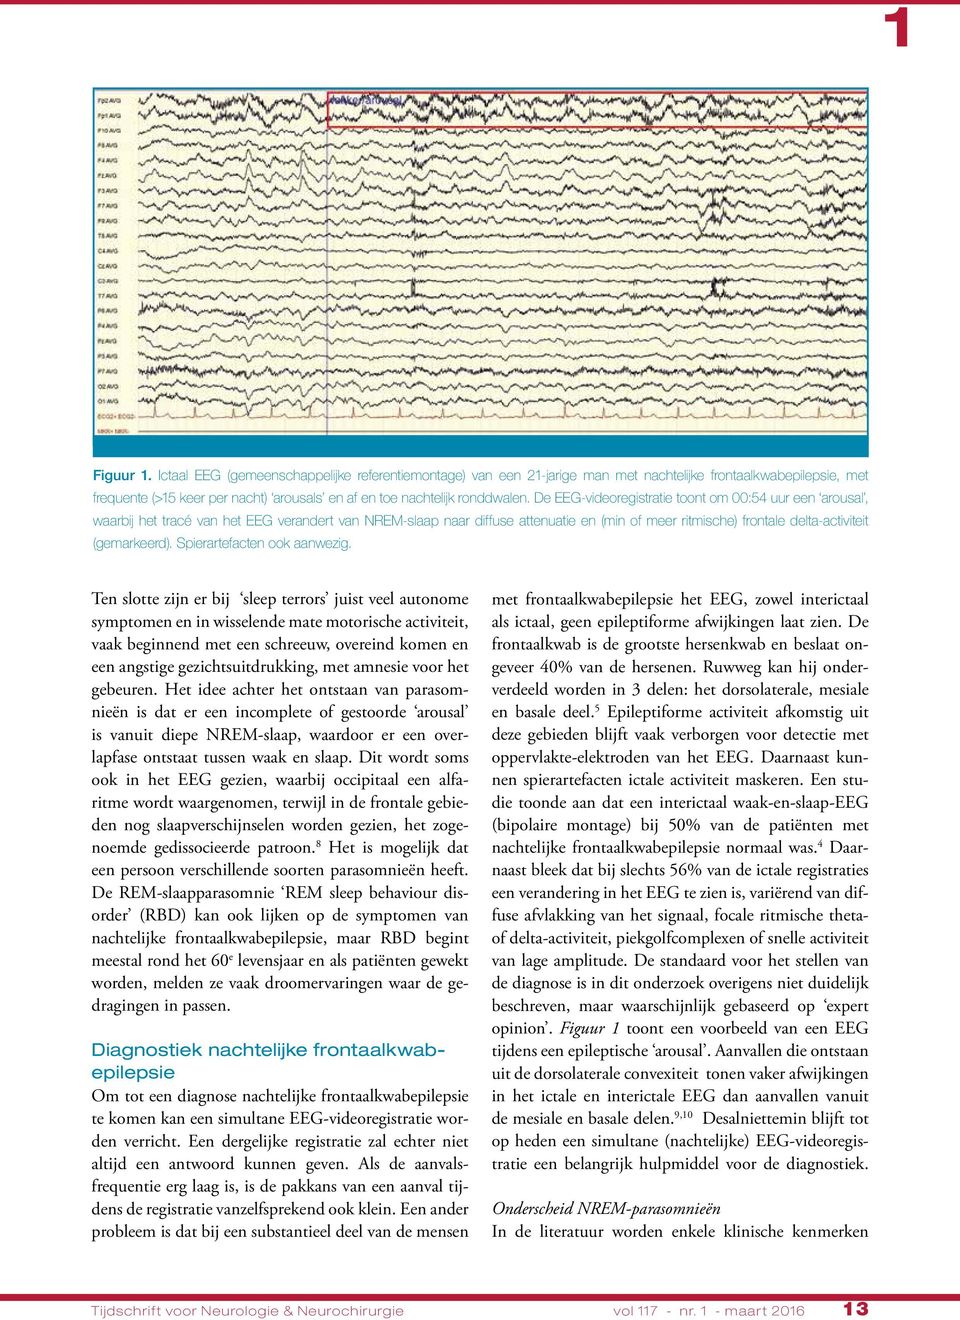 De EEG-videoregistratie toont om :54 uur een arousal, waarbij het tracé van het EEG verandert van NREM-slaap naar diffuse attenuatie en (min of meer ritmische) frontale delta-activiteit (gemarkeerd).